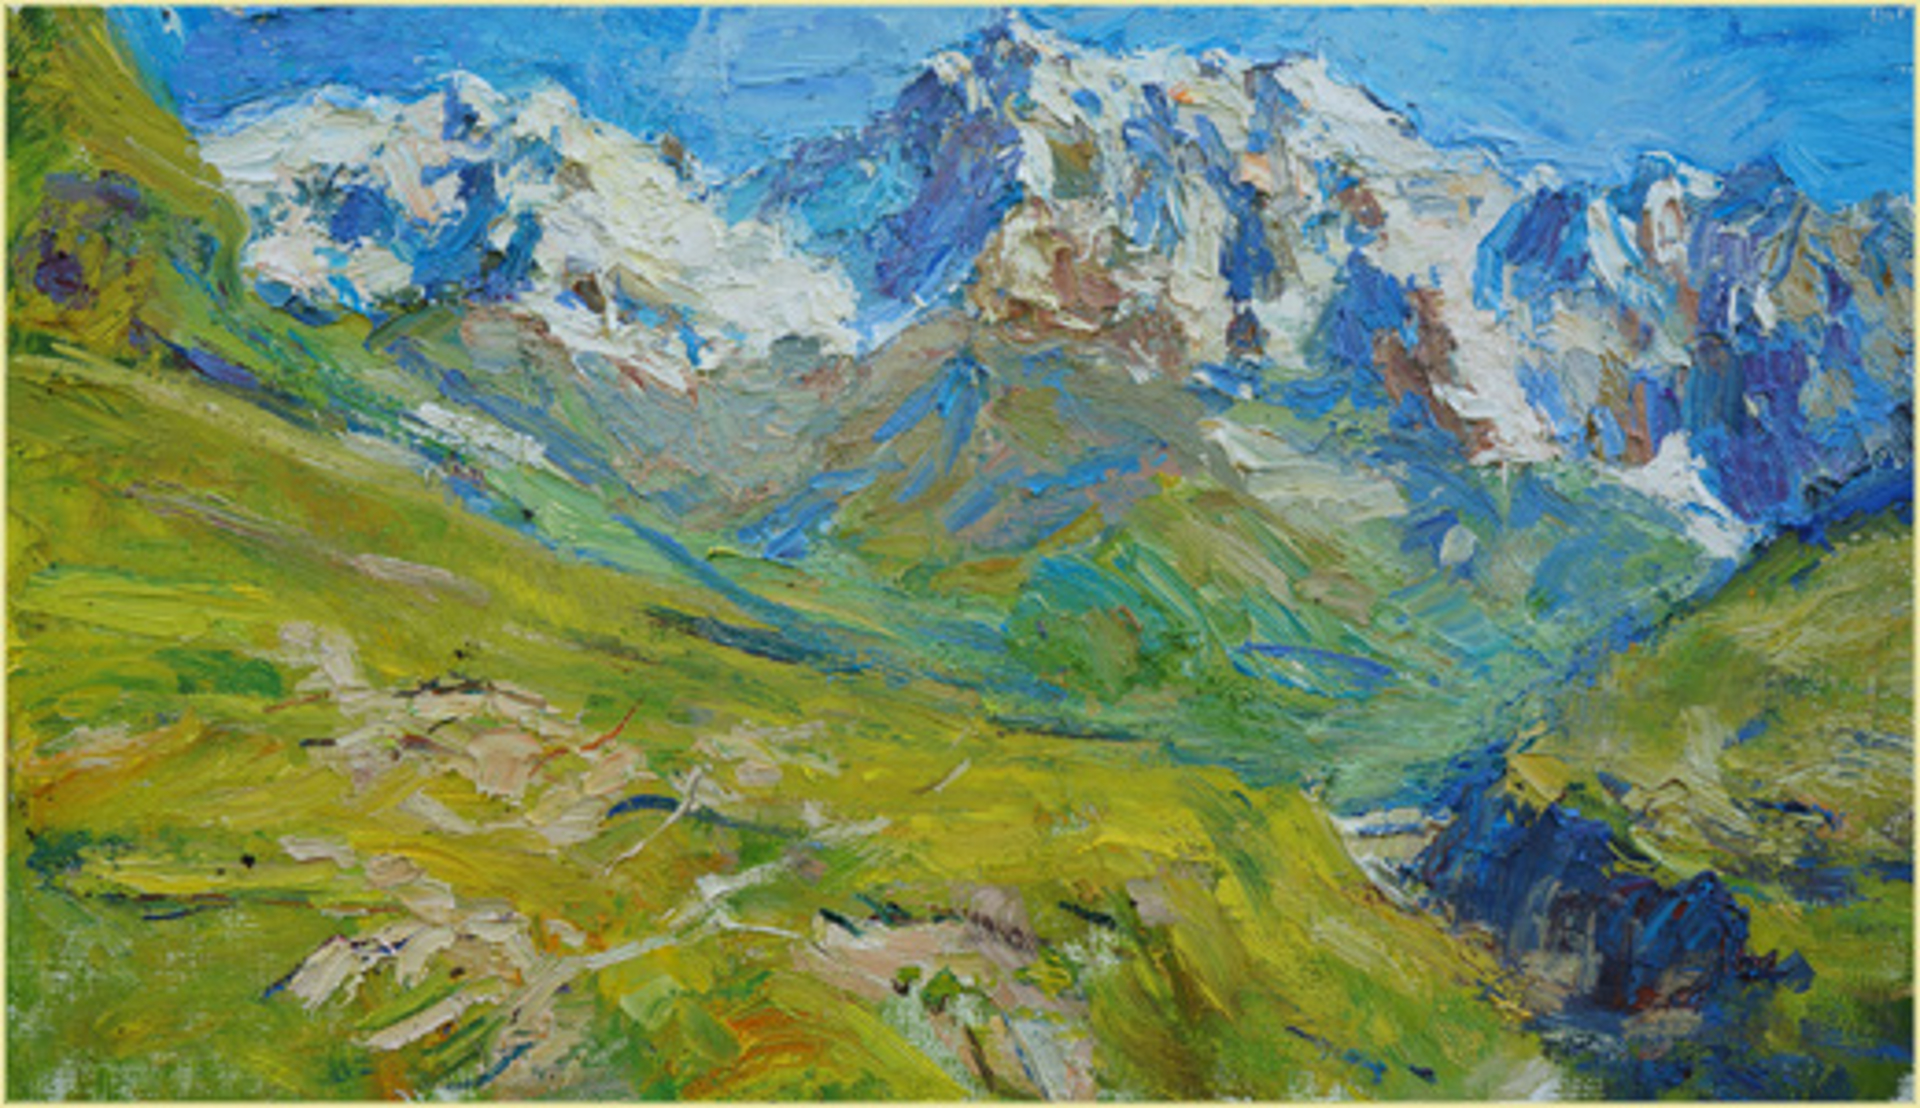 High Alpine Meadows by Ulrich Gleiter